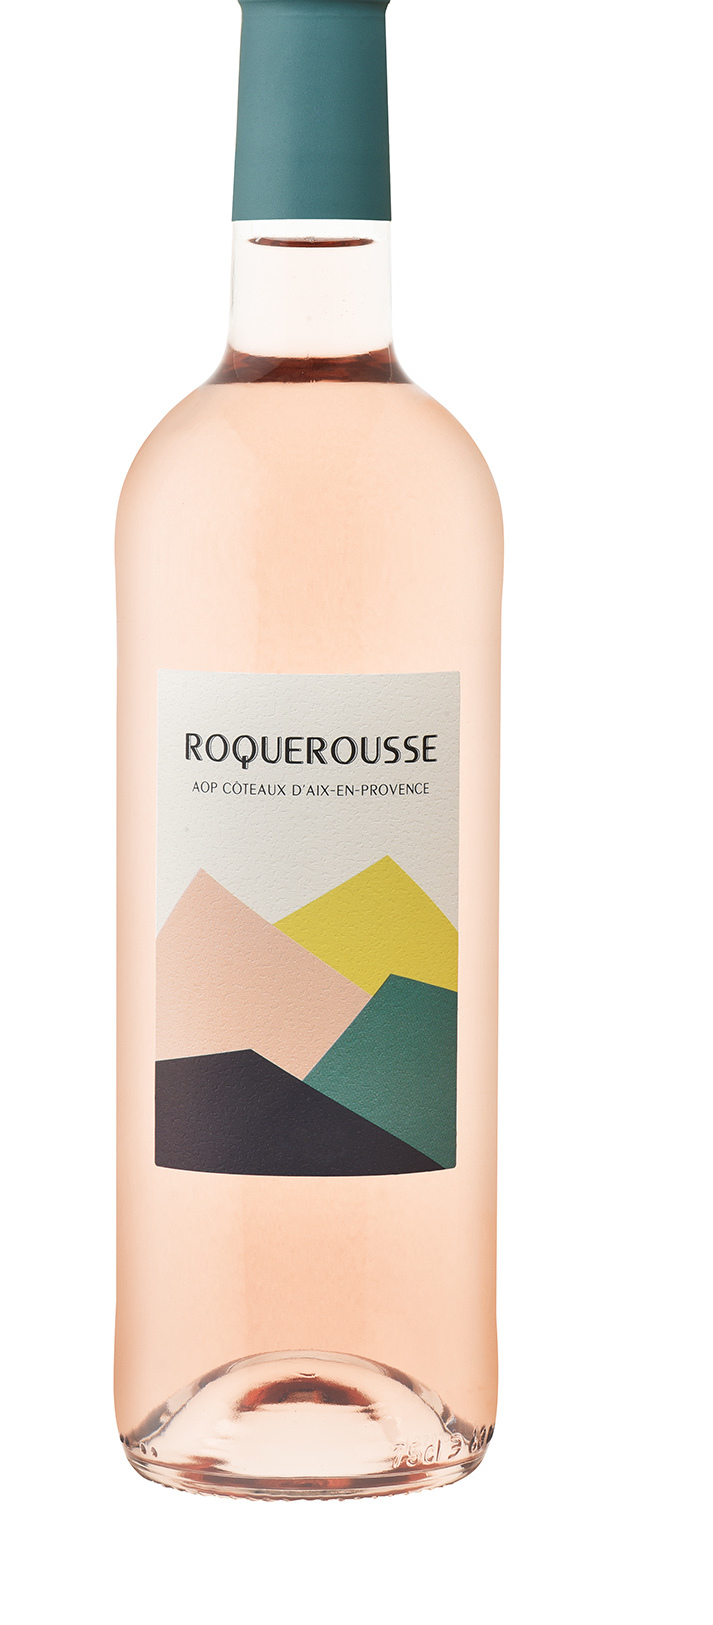 Roquerousse